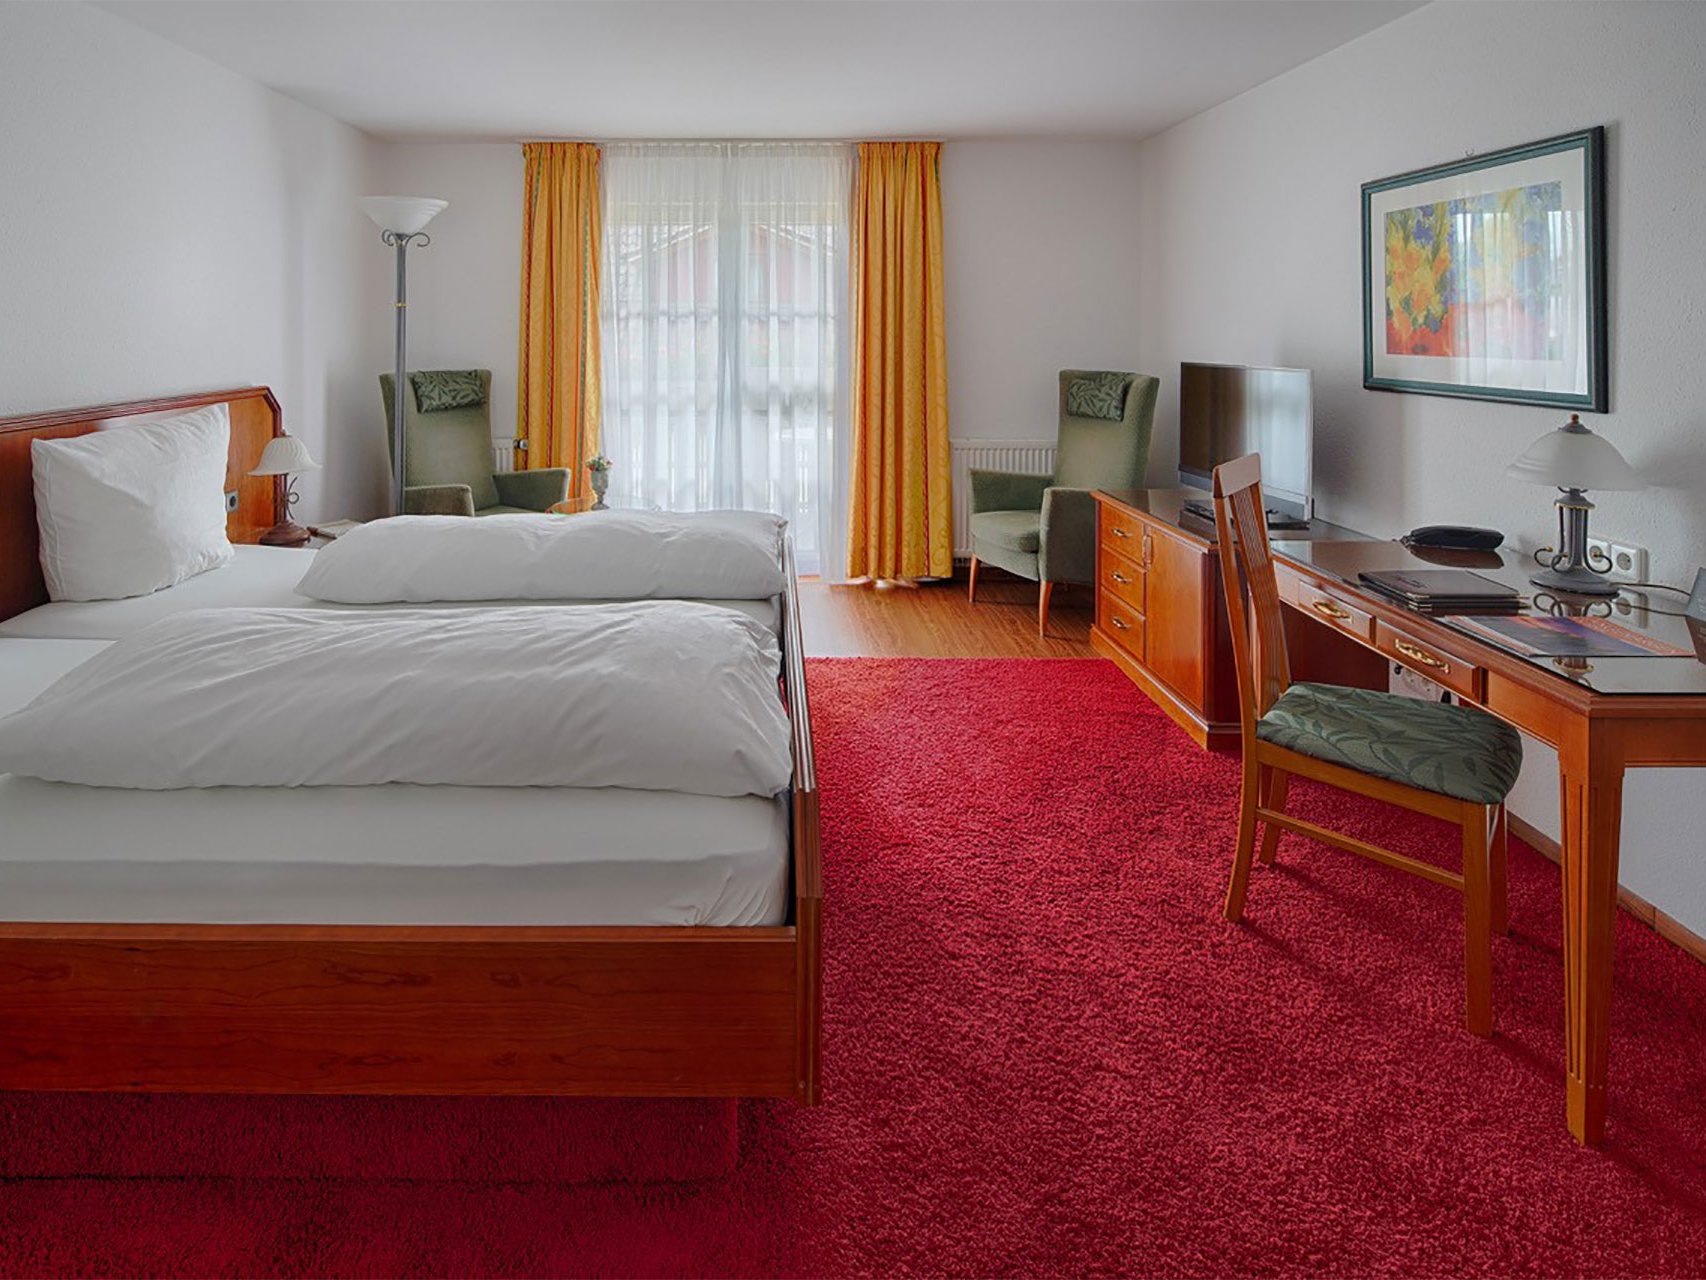 Doppelzimmer Kategorie 1 mit Seeblick des Hotels Seeperle am Bodensee.